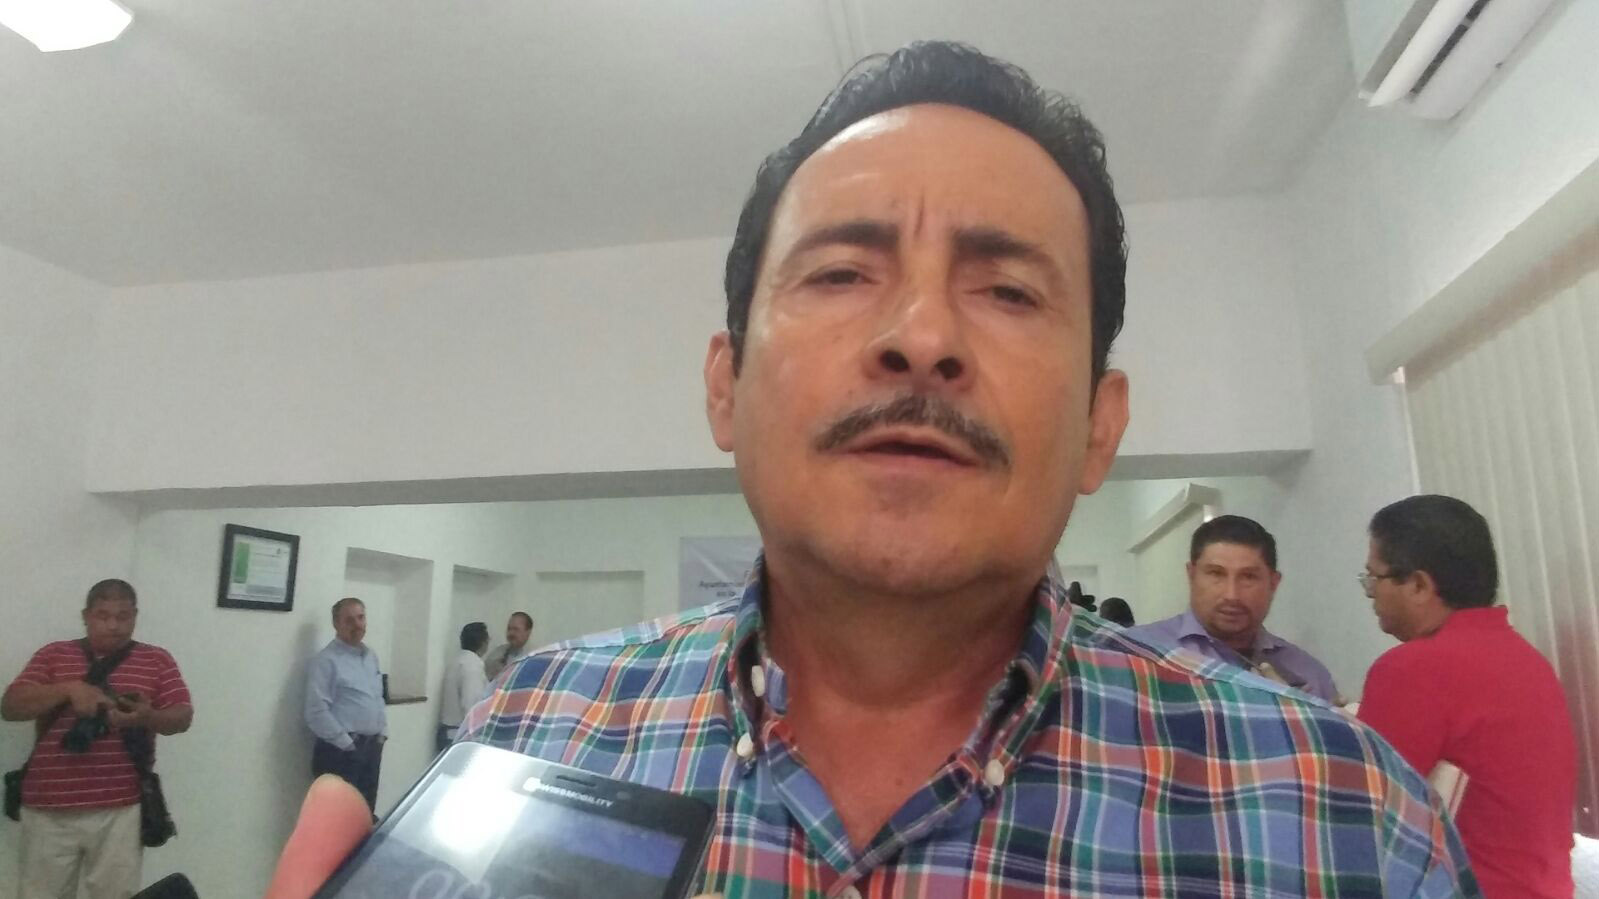 Con el homicidio de Crispín Gutiérrez, ya suman 3 dirigentes de alcaldías asesinados en octubre